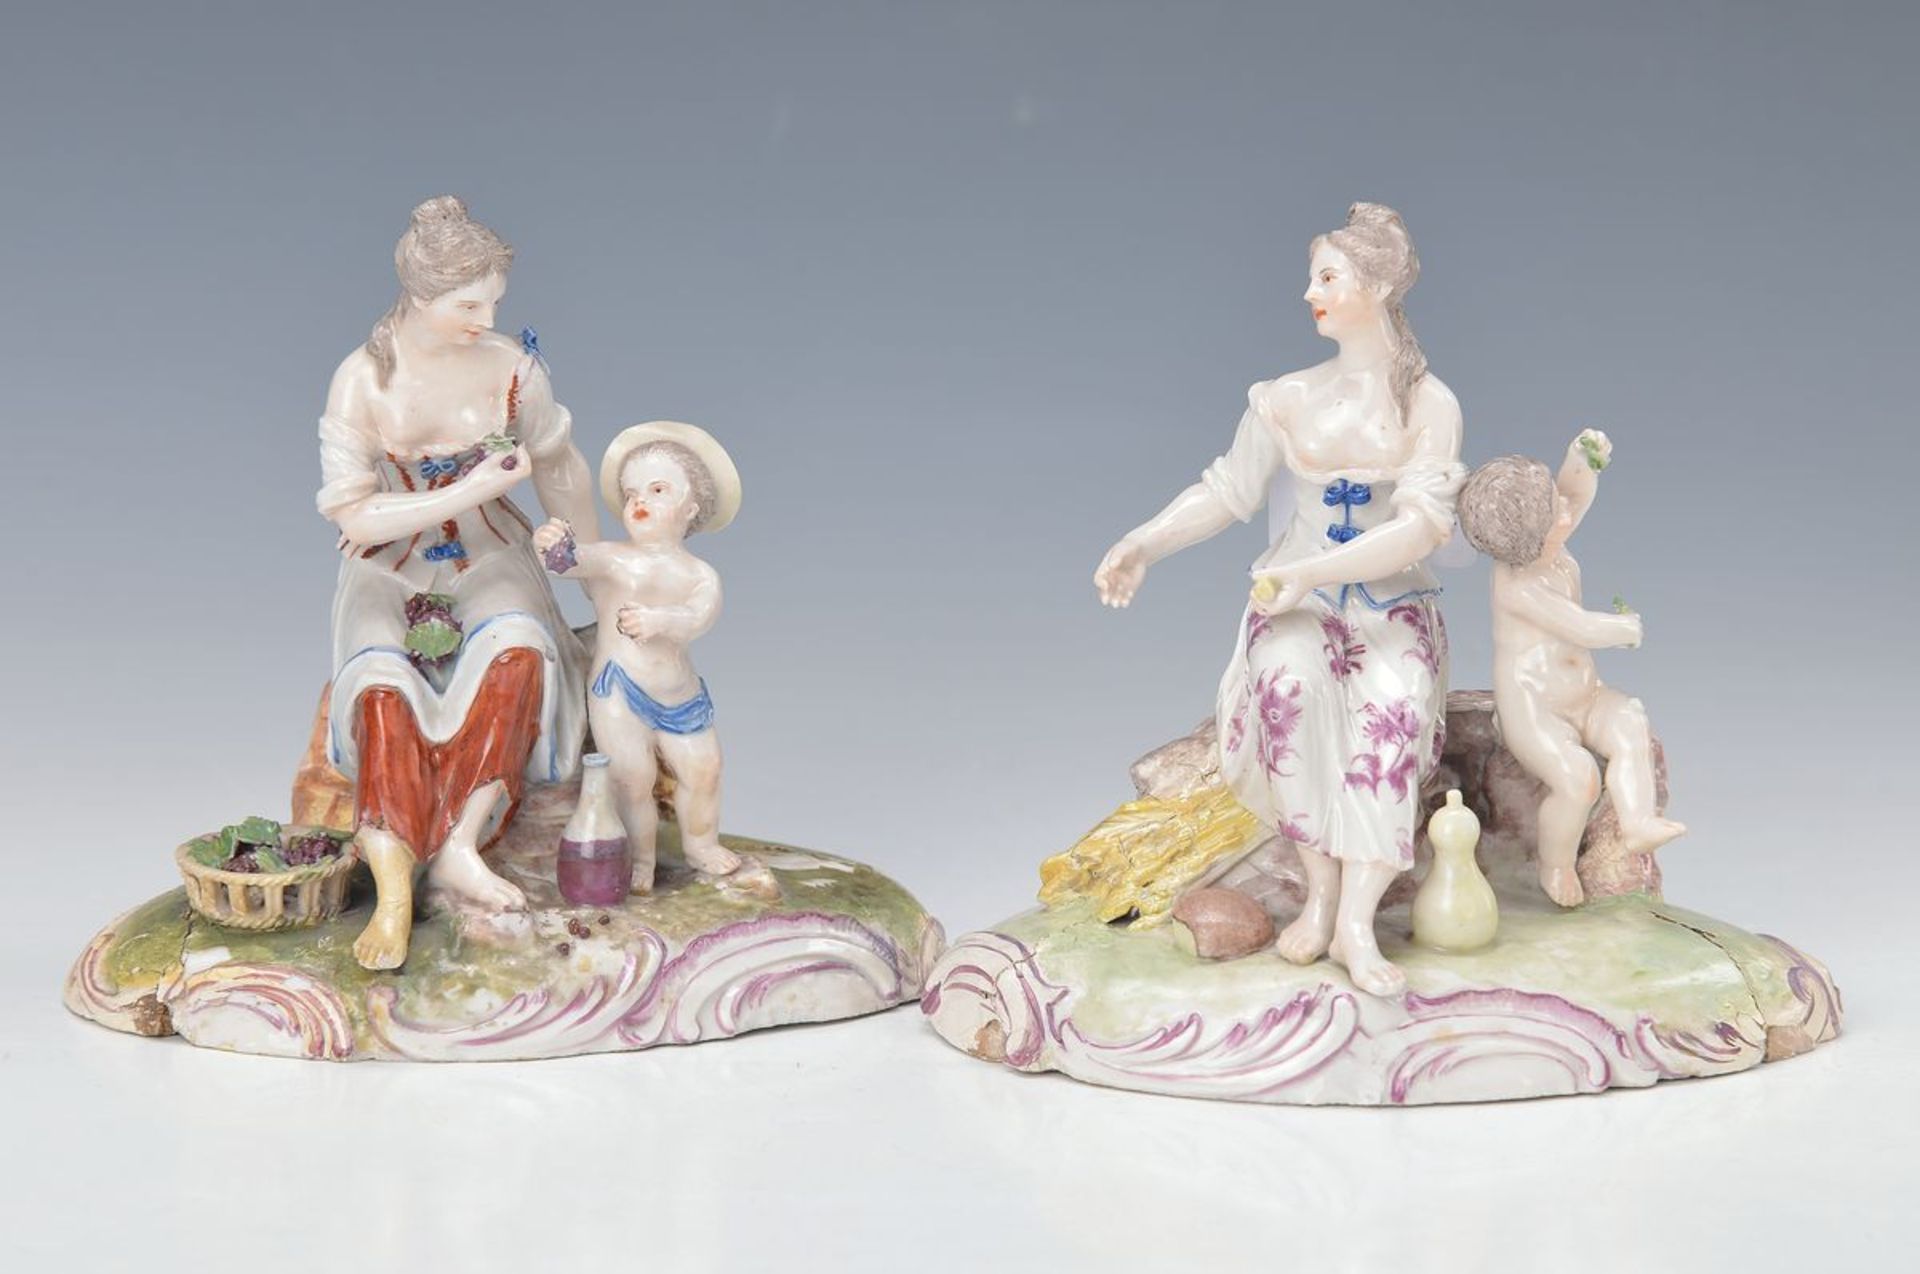 2 Porzellangruppen, Ludwigsburg, 1780, Porzellan, polychrom bemalt, Mädchen mit Putto, stark